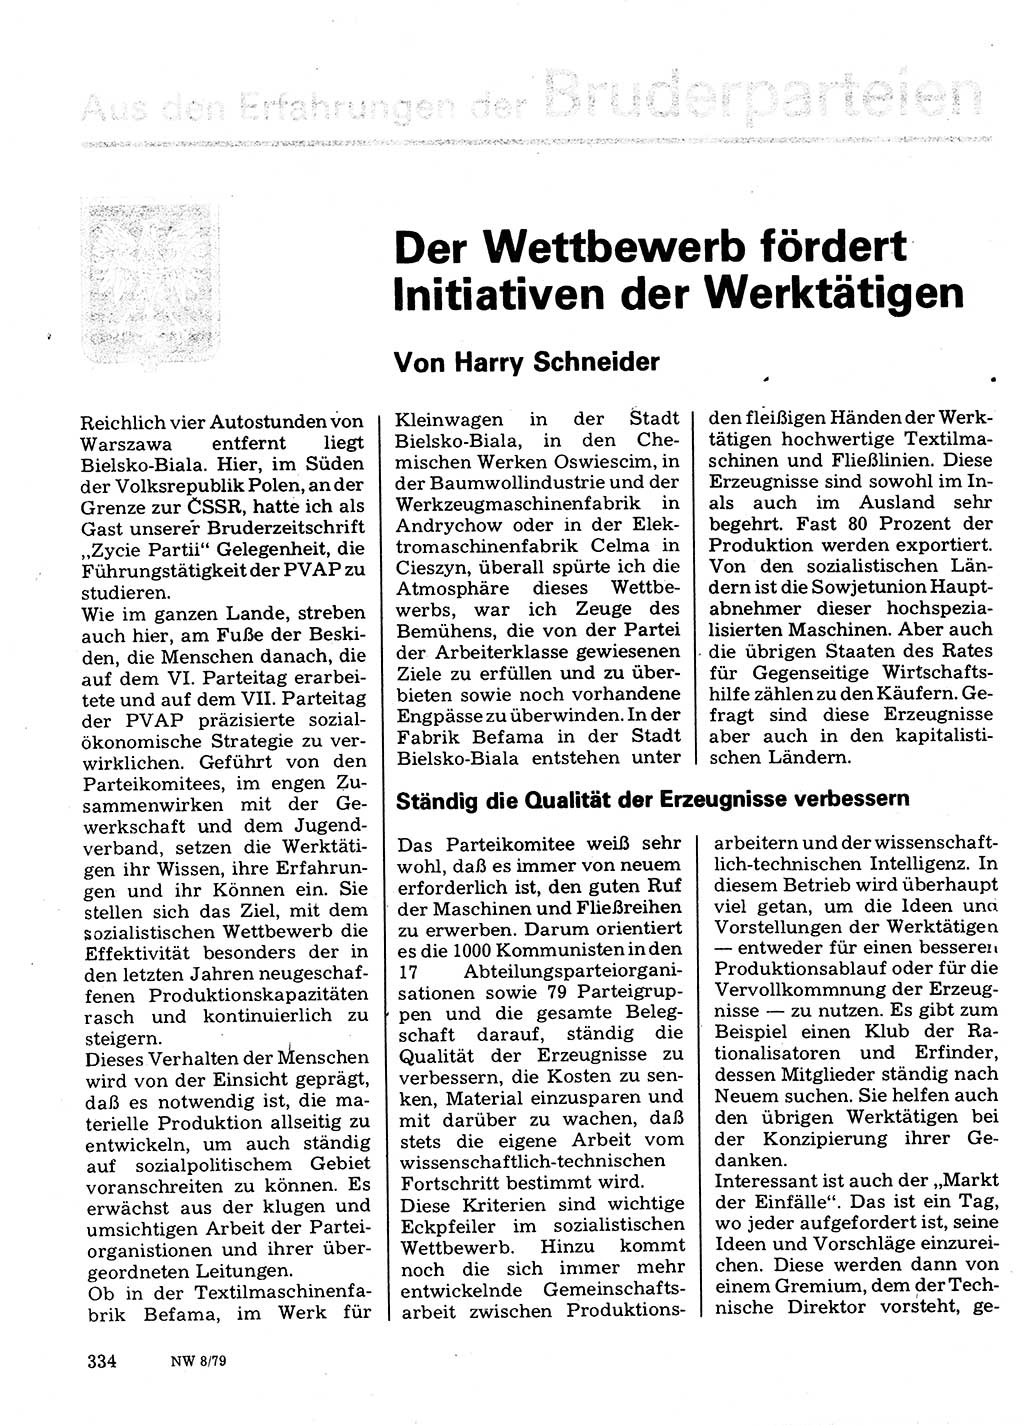 Neuer Weg (NW), Organ des Zentralkomitees (ZK) der SED (Sozialistische Einheitspartei Deutschlands) für Fragen des Parteilebens, 34. Jahrgang [Deutsche Demokratische Republik (DDR)] 1979, Seite 334 (NW ZK SED DDR 1979, S. 334)